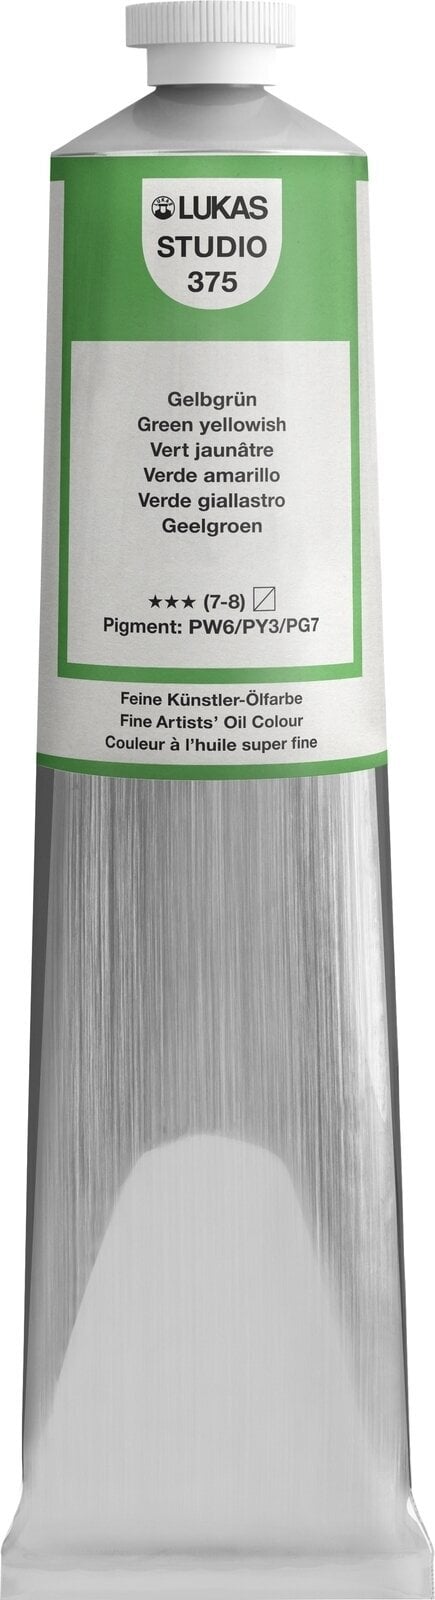 Ölfarbe Lukas Studio Oil Paint Aluminium Tube Ölgemälde Green Yellowish 200 ml 1 Stck